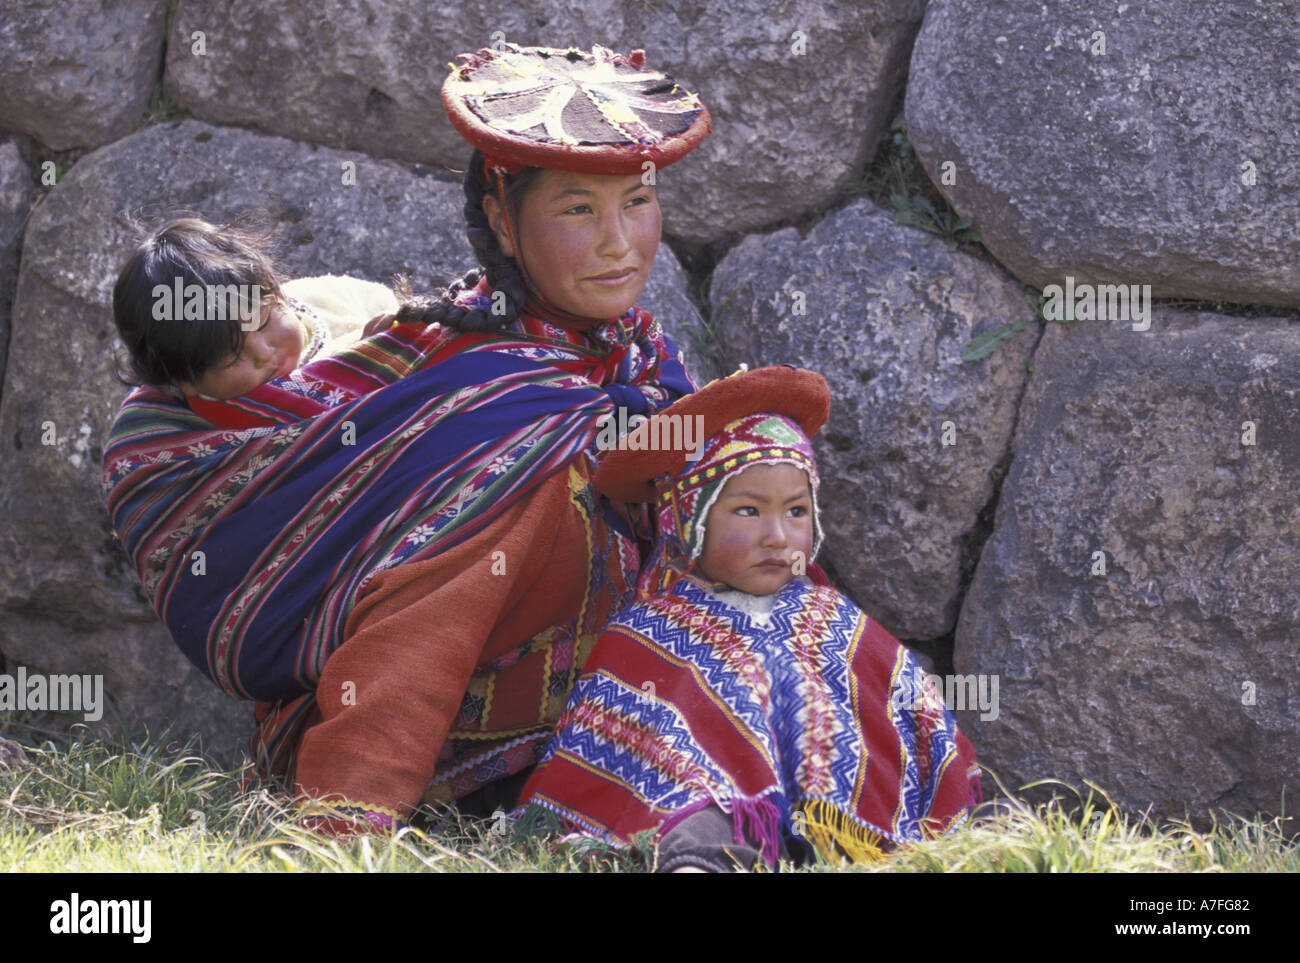 SA, Pérou, Cusco famille péruvienne à Inti Raymi Festival, vêtements traditionnels, Sacsayhuaman (MR) Banque D'Images